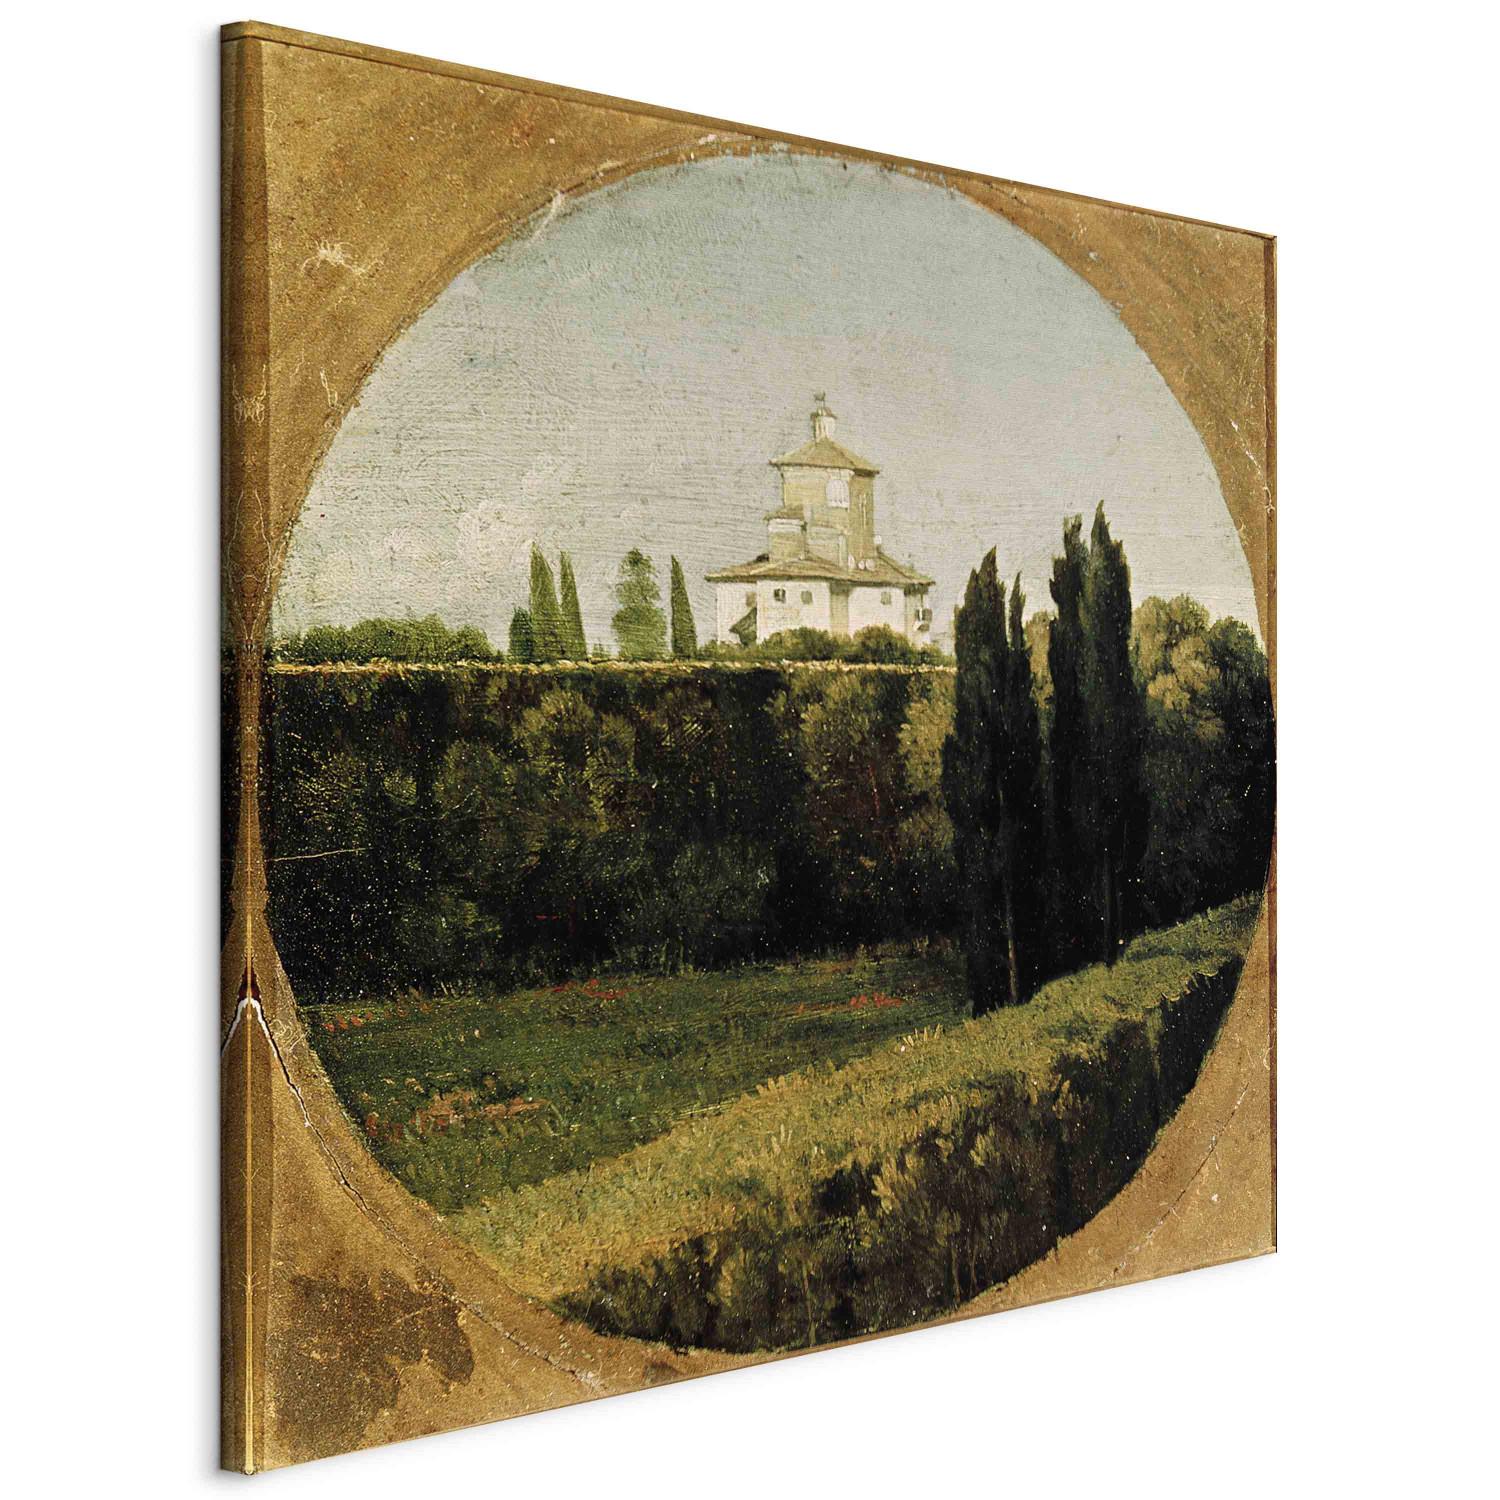 Canvas View of the Villa Medici, Rome